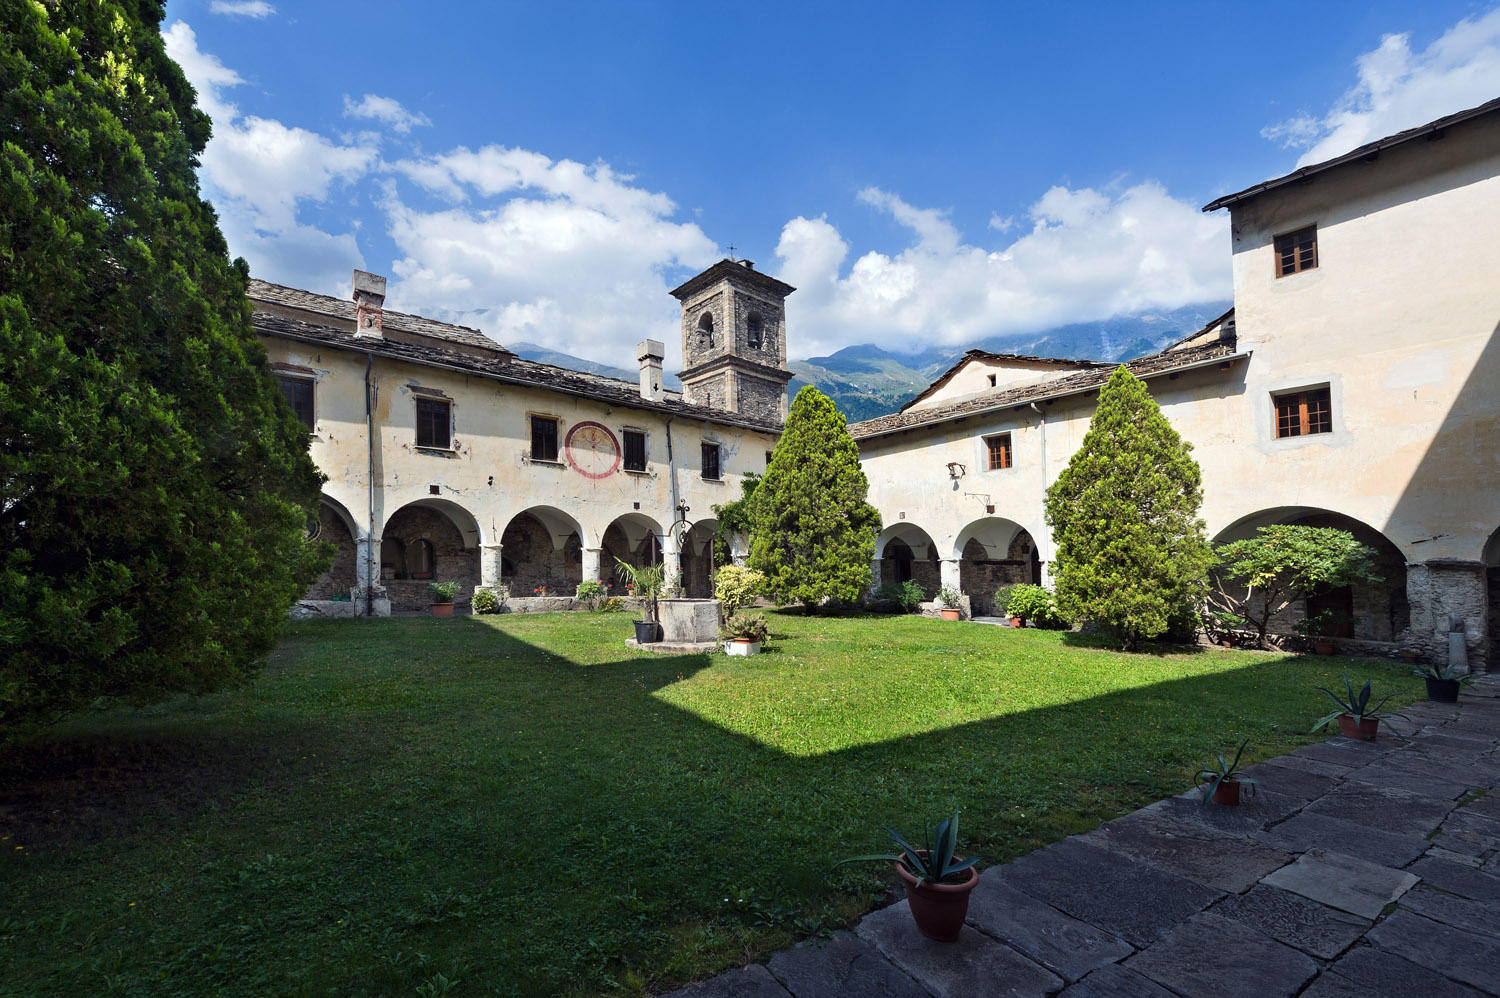 Piemonte, Piedmont